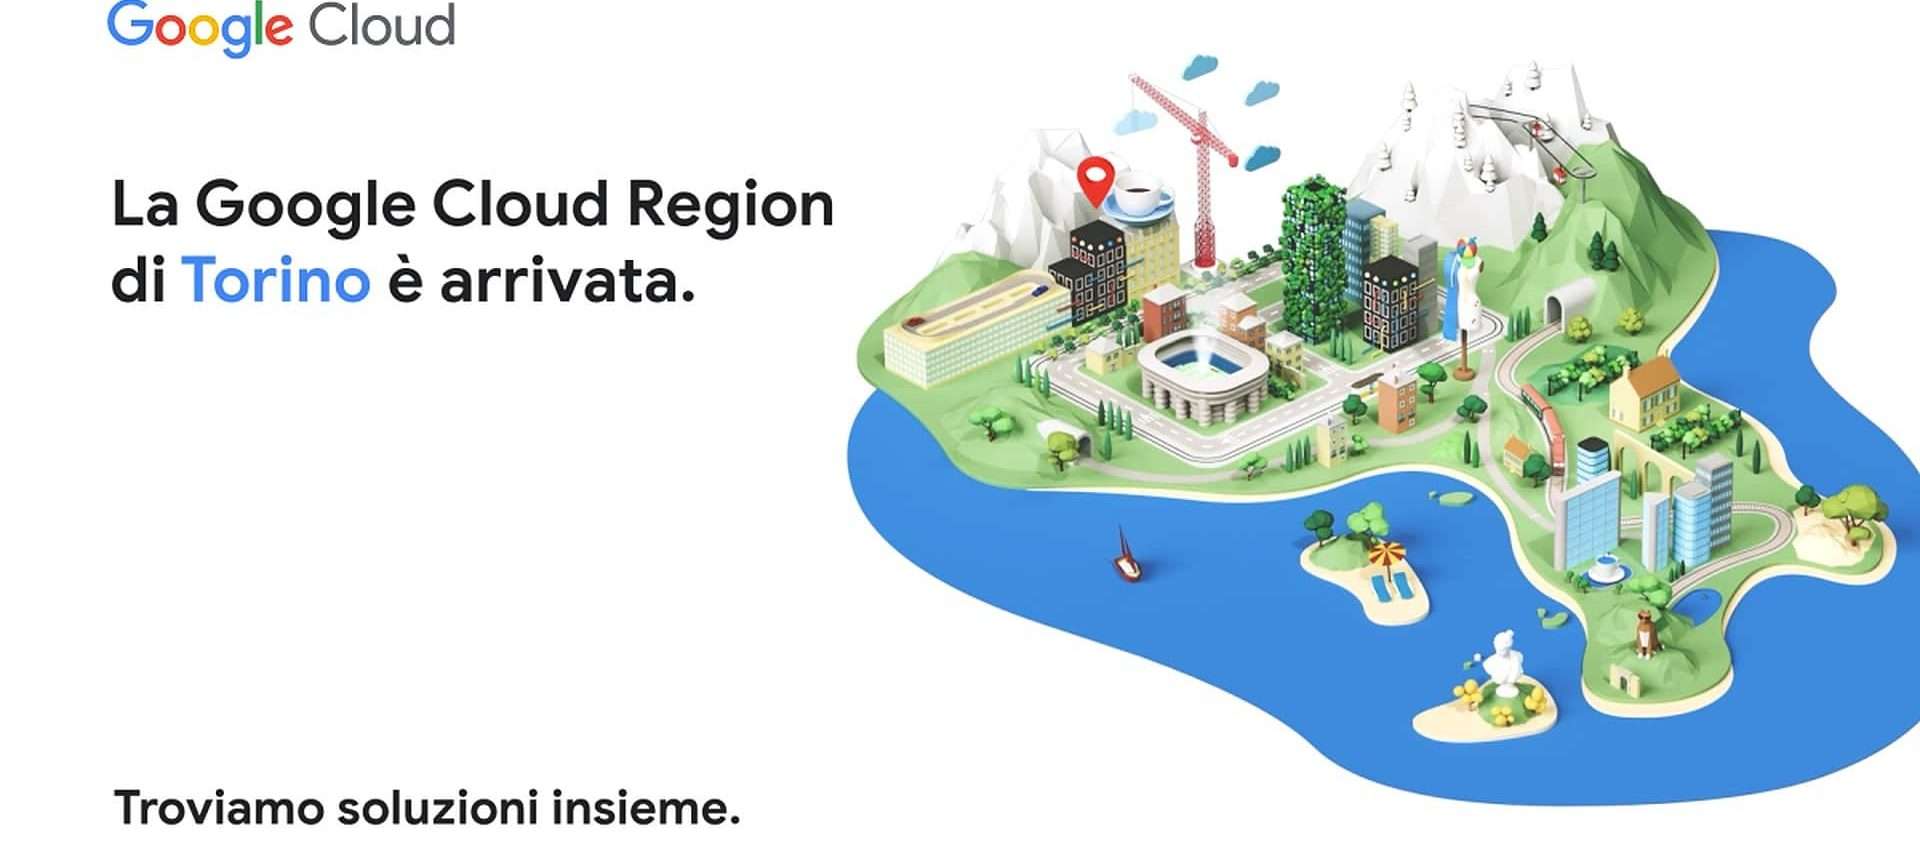 Google Cloud apre la seconda region in Italia a Torino